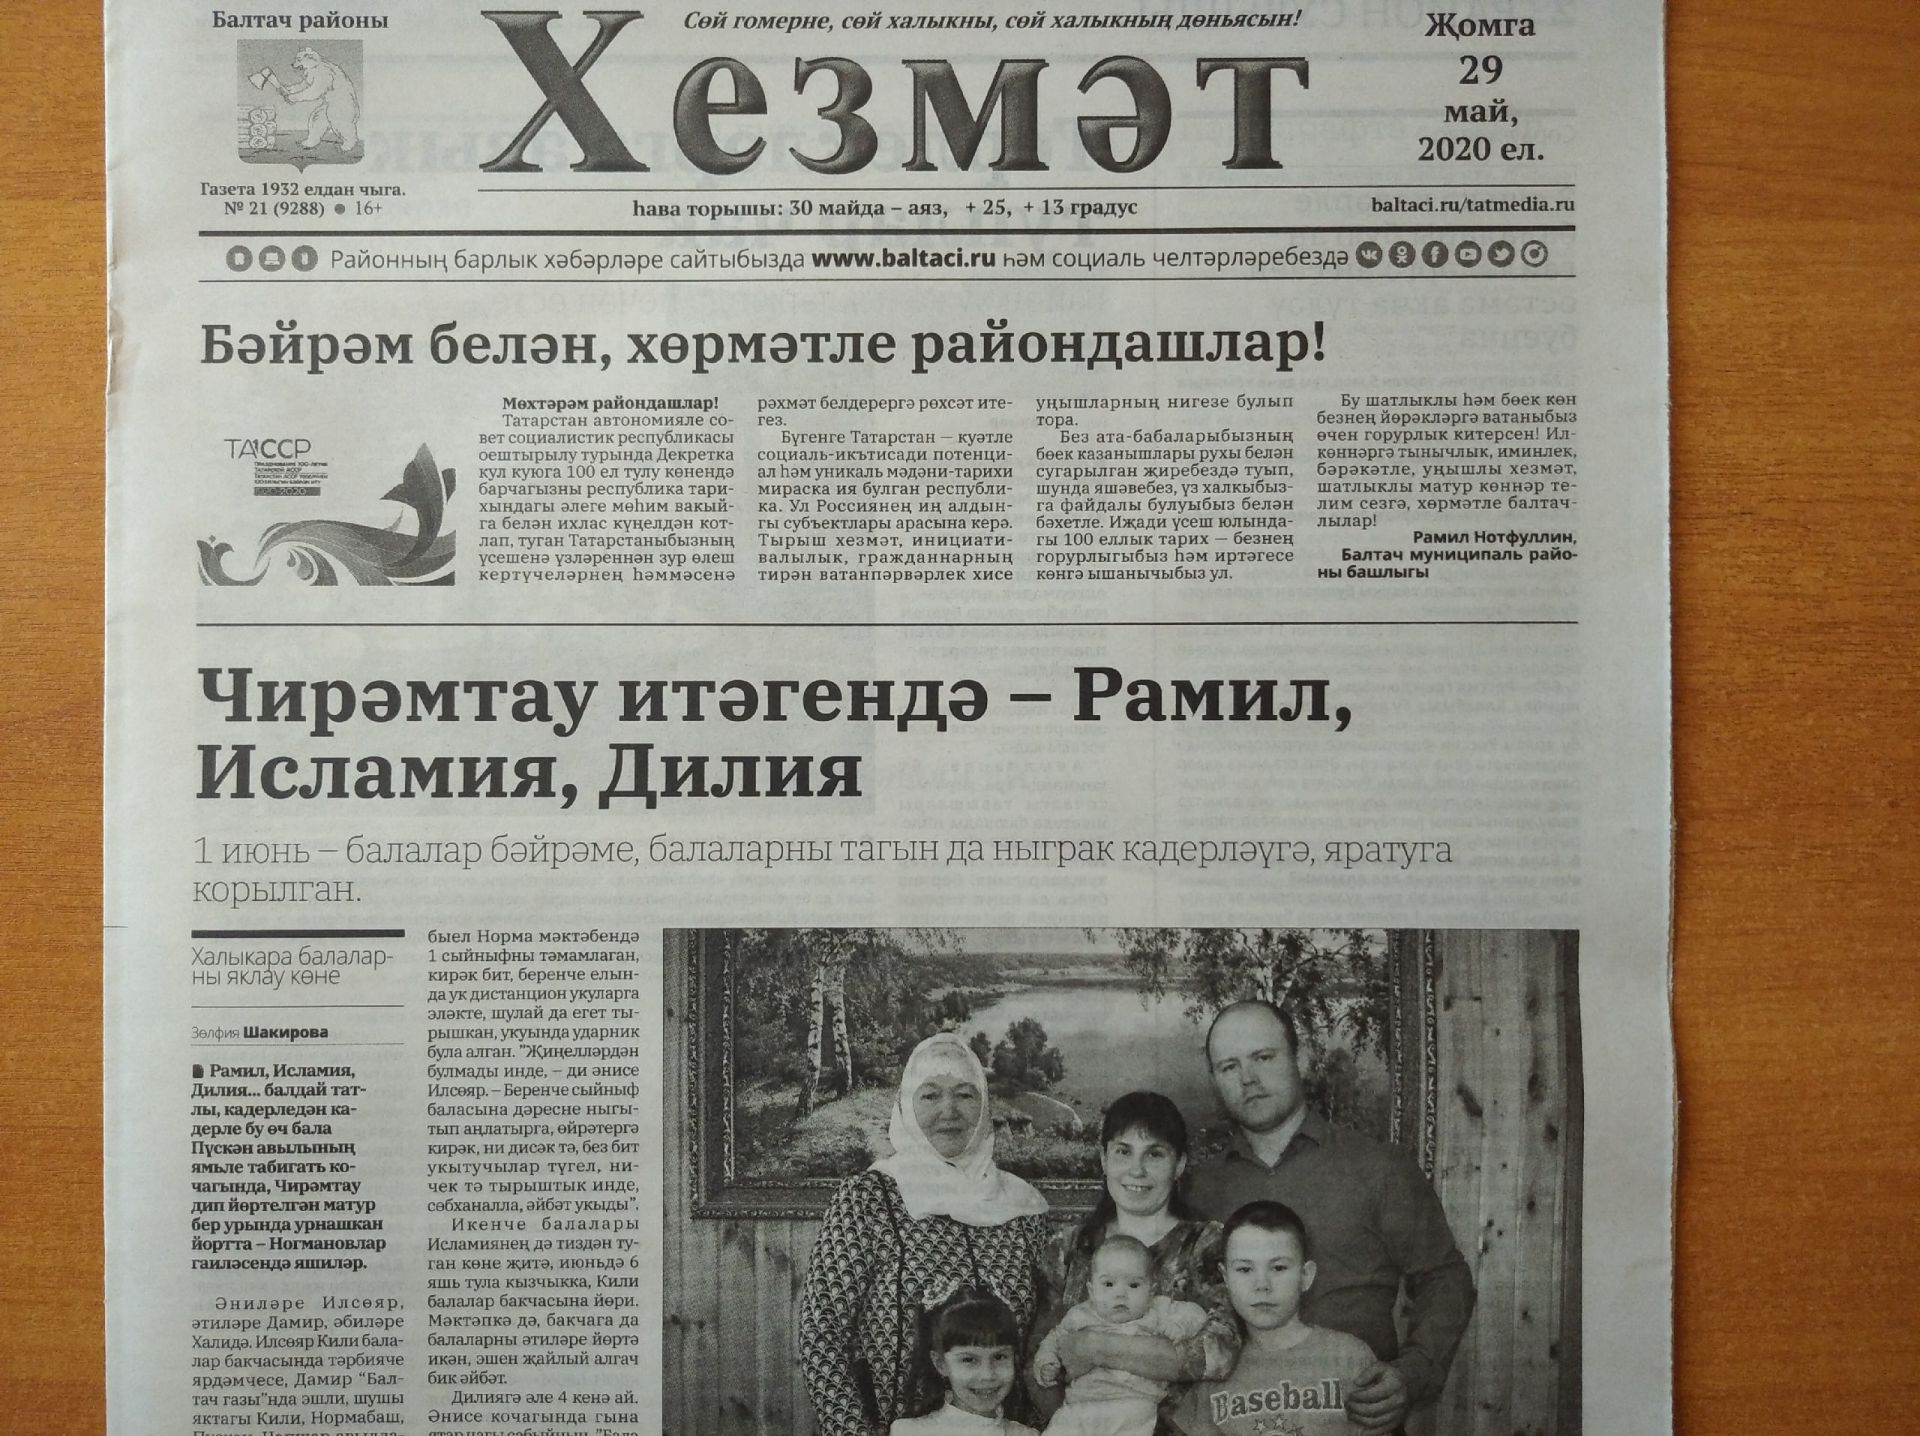 Газетаның 21нче санында (29 май, 2020 ел) чыгарылган белдерүләр һәм рекламалар